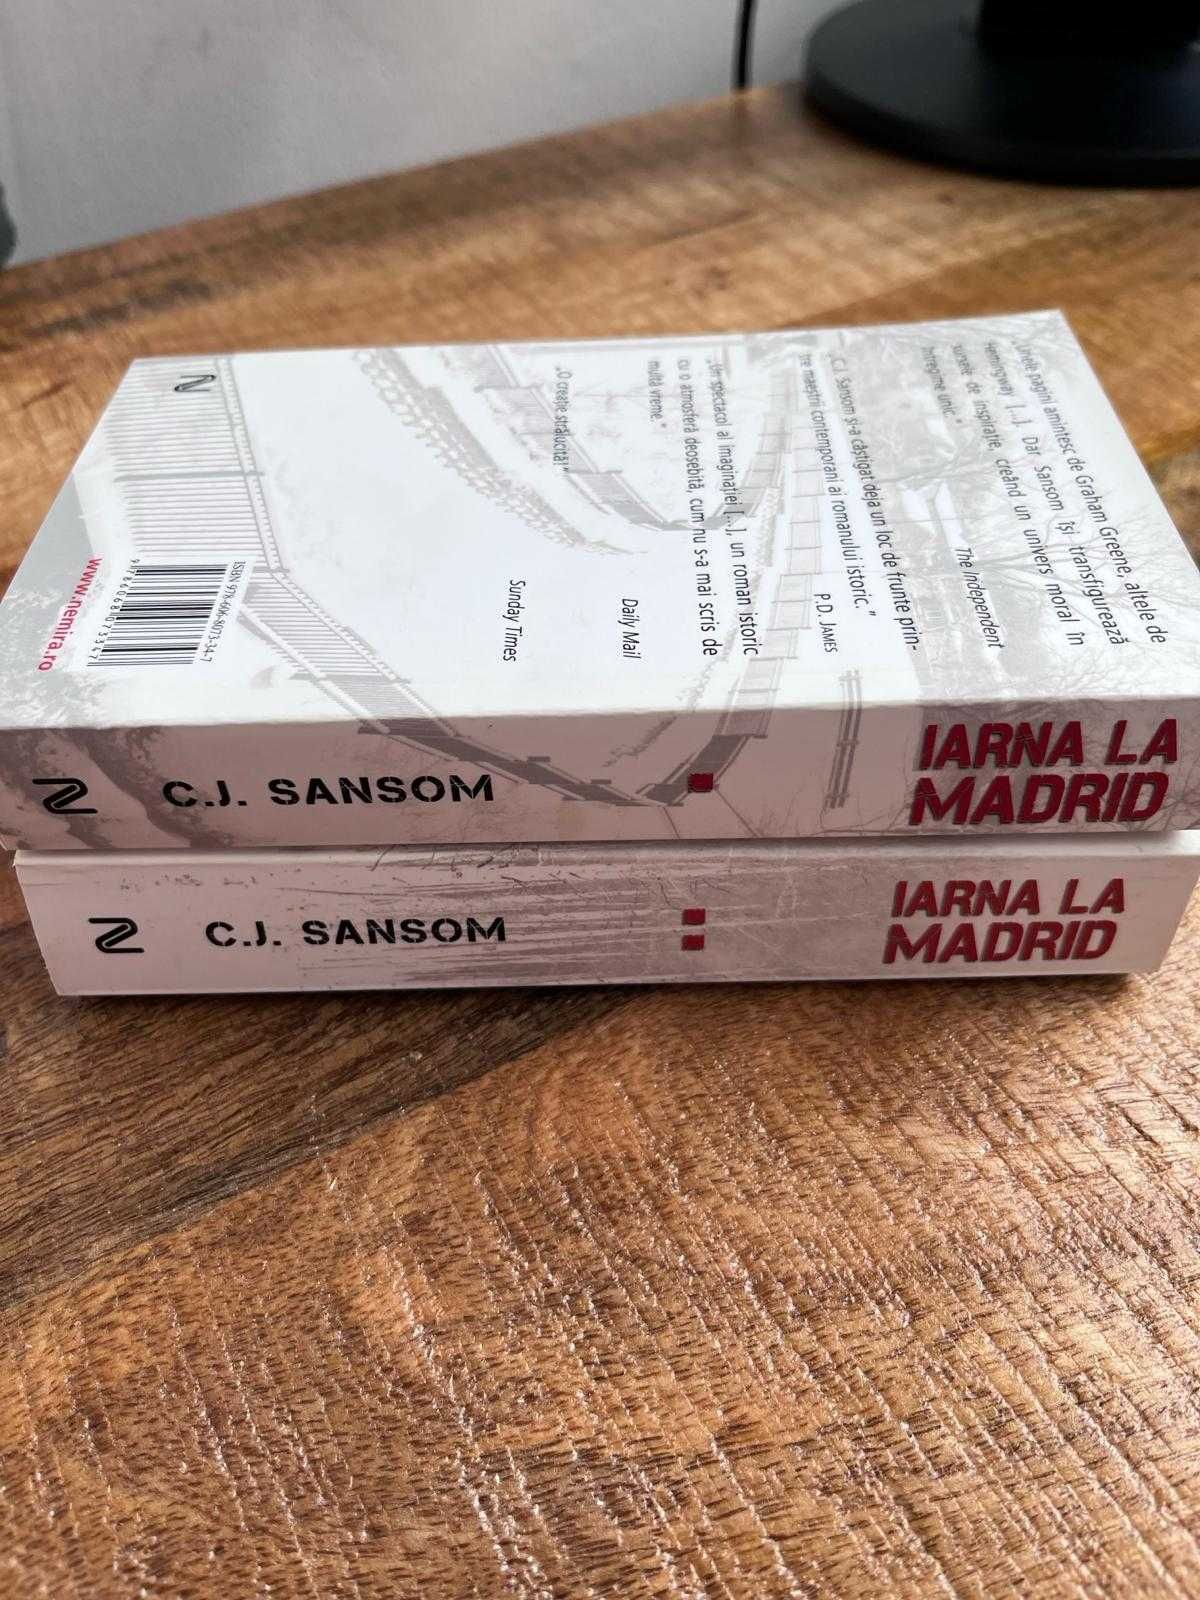 Bestseller INTERNATIONAL - Iarna la Madrid - C.J. Sansom